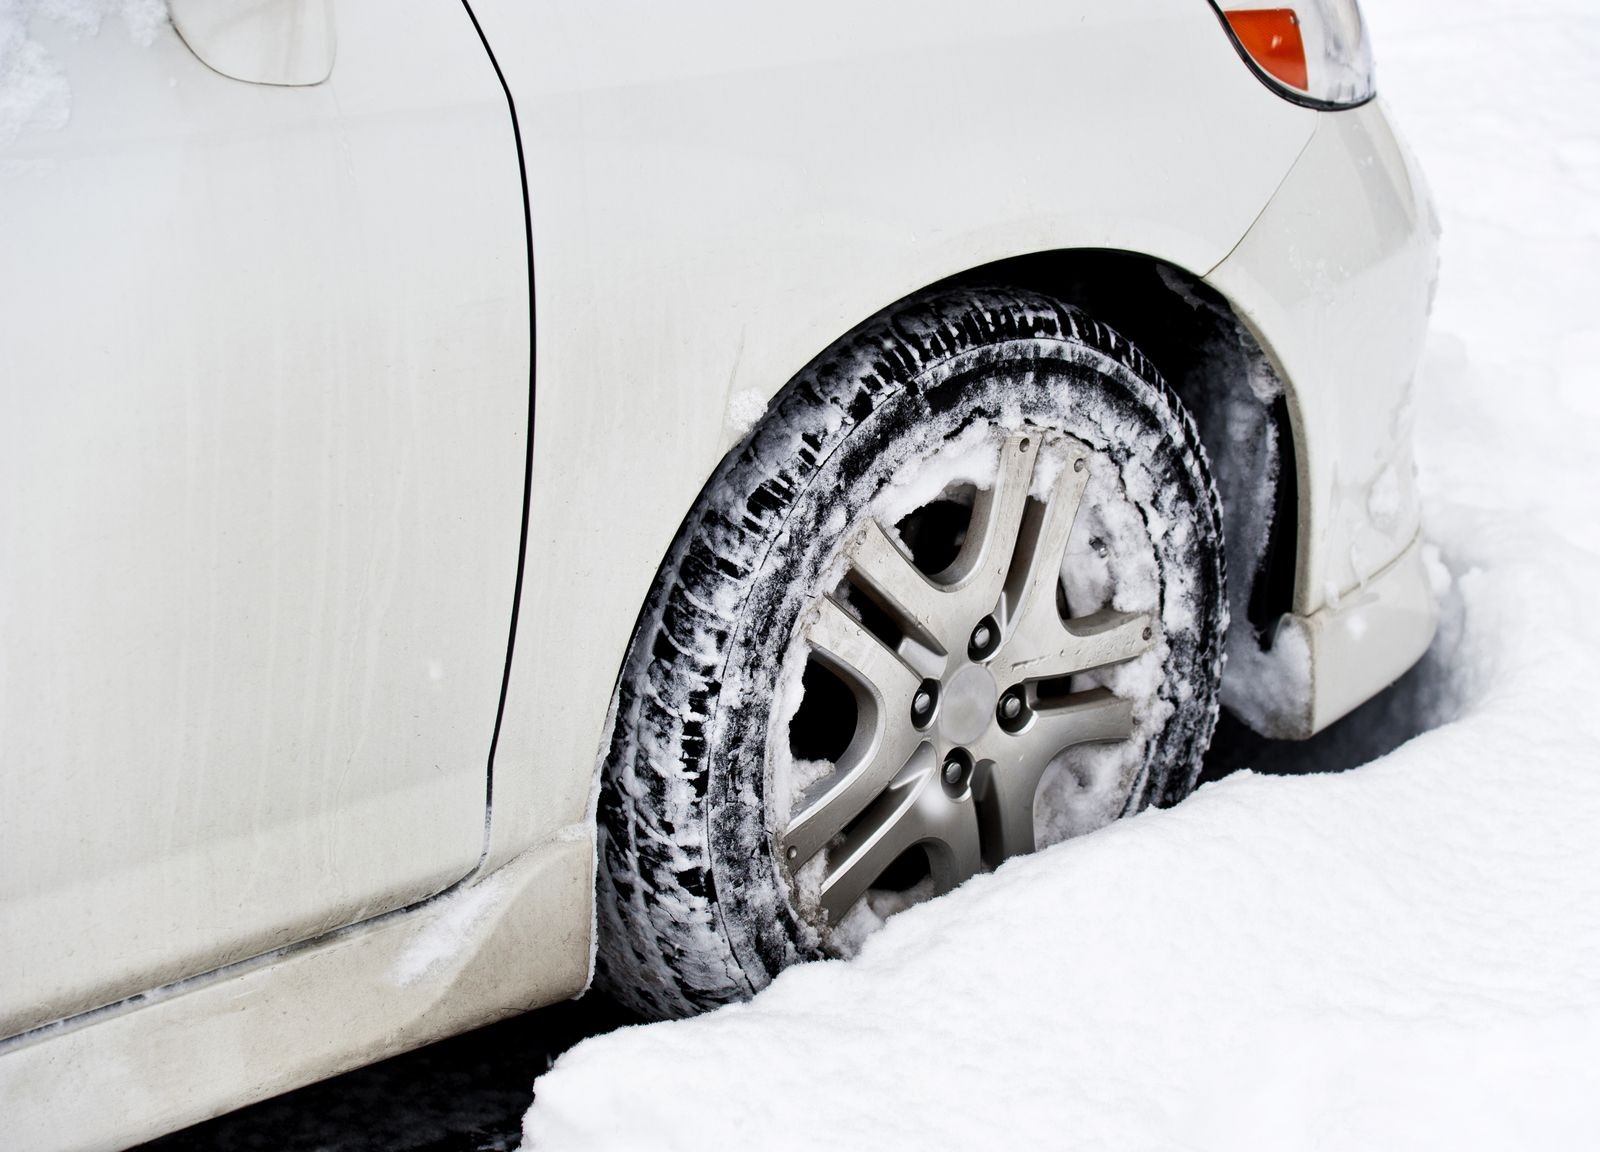 Можно буксовать на автомате. Колесо буксует в снегу. Машина застряла в снегу. Машина на зимней дороге. Автомобиль буксует в снегу.